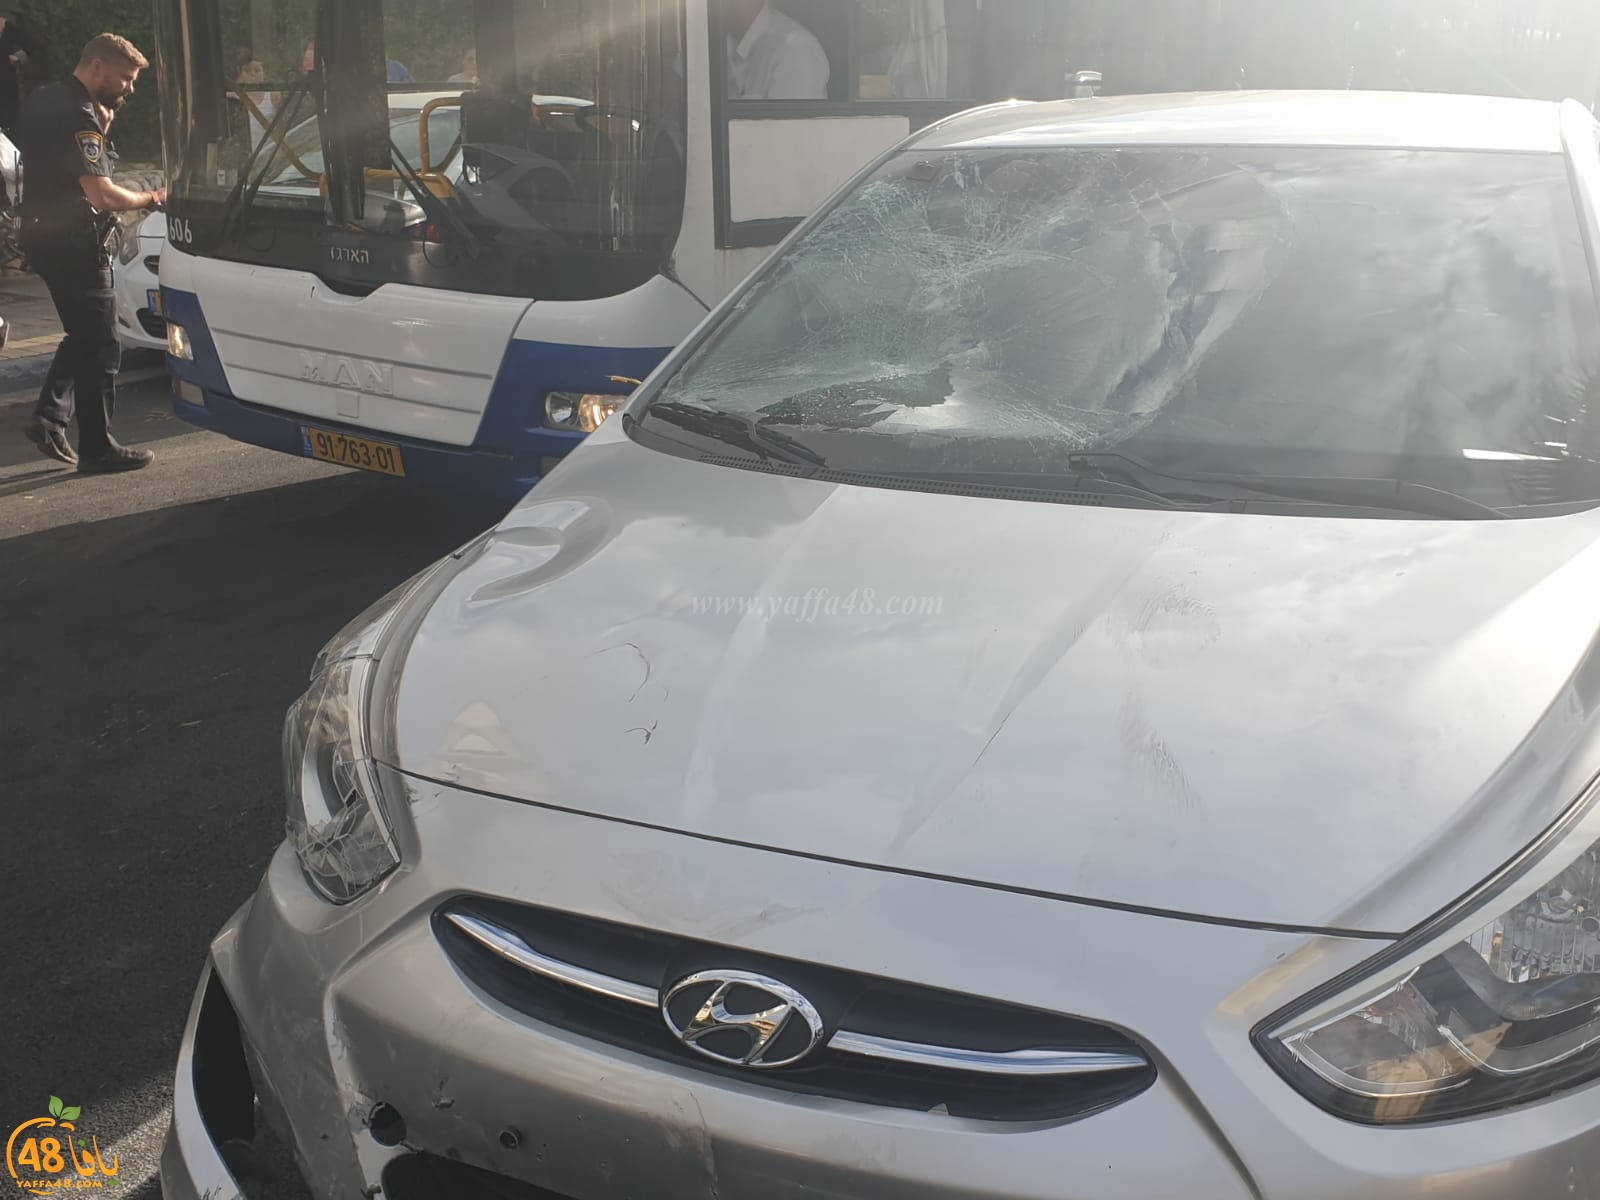  يافا: إصابة متوسطة لشاب 18 عاماً بحادث طرق وسط المدينة